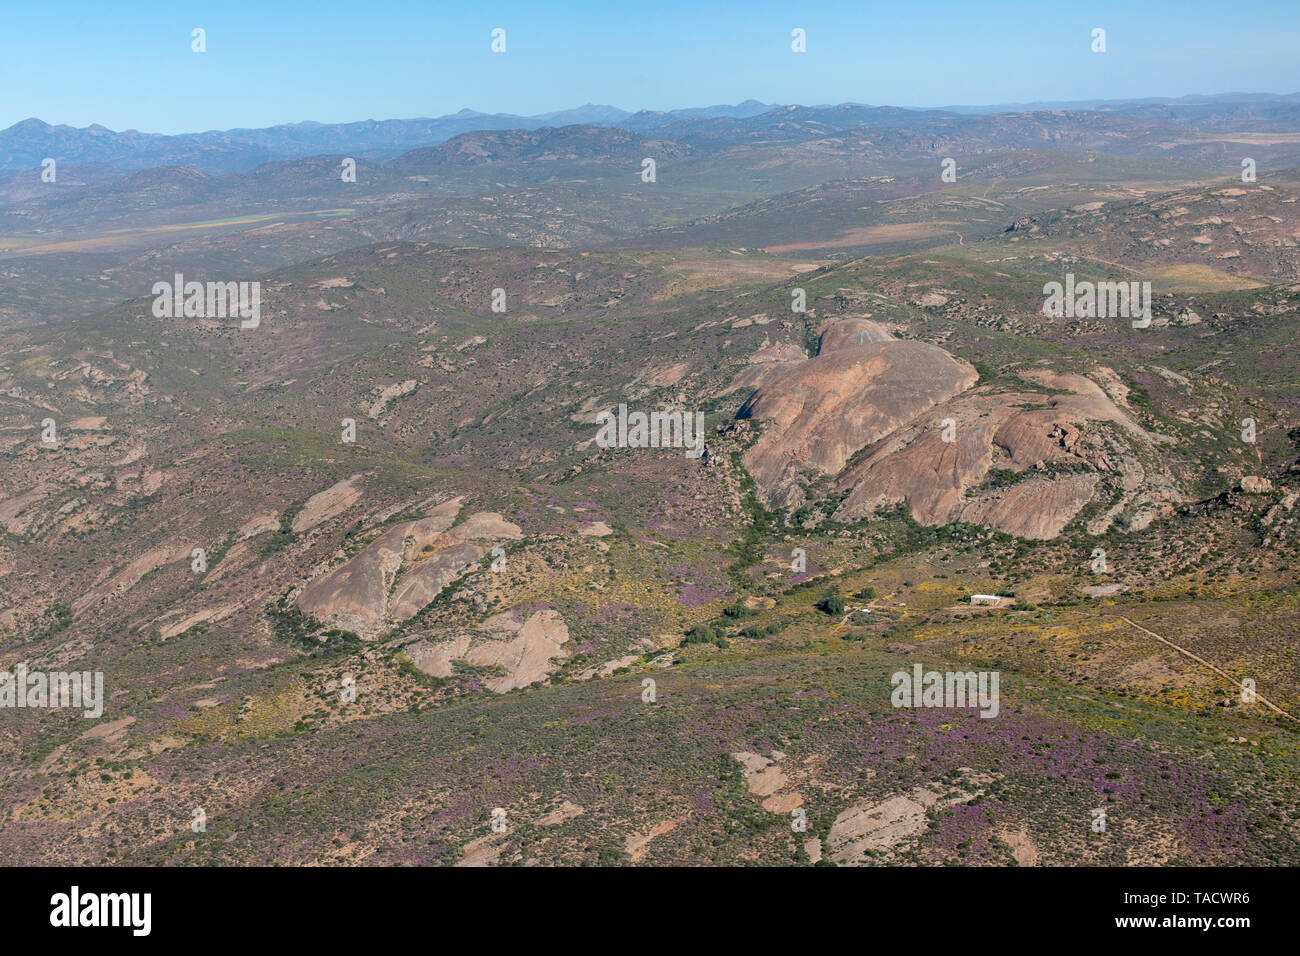 Vue aérienne du paysage au sud de la ville de Springbok dans la province du Cap du Nord de l'Afrique du Sud. Banque D'Images